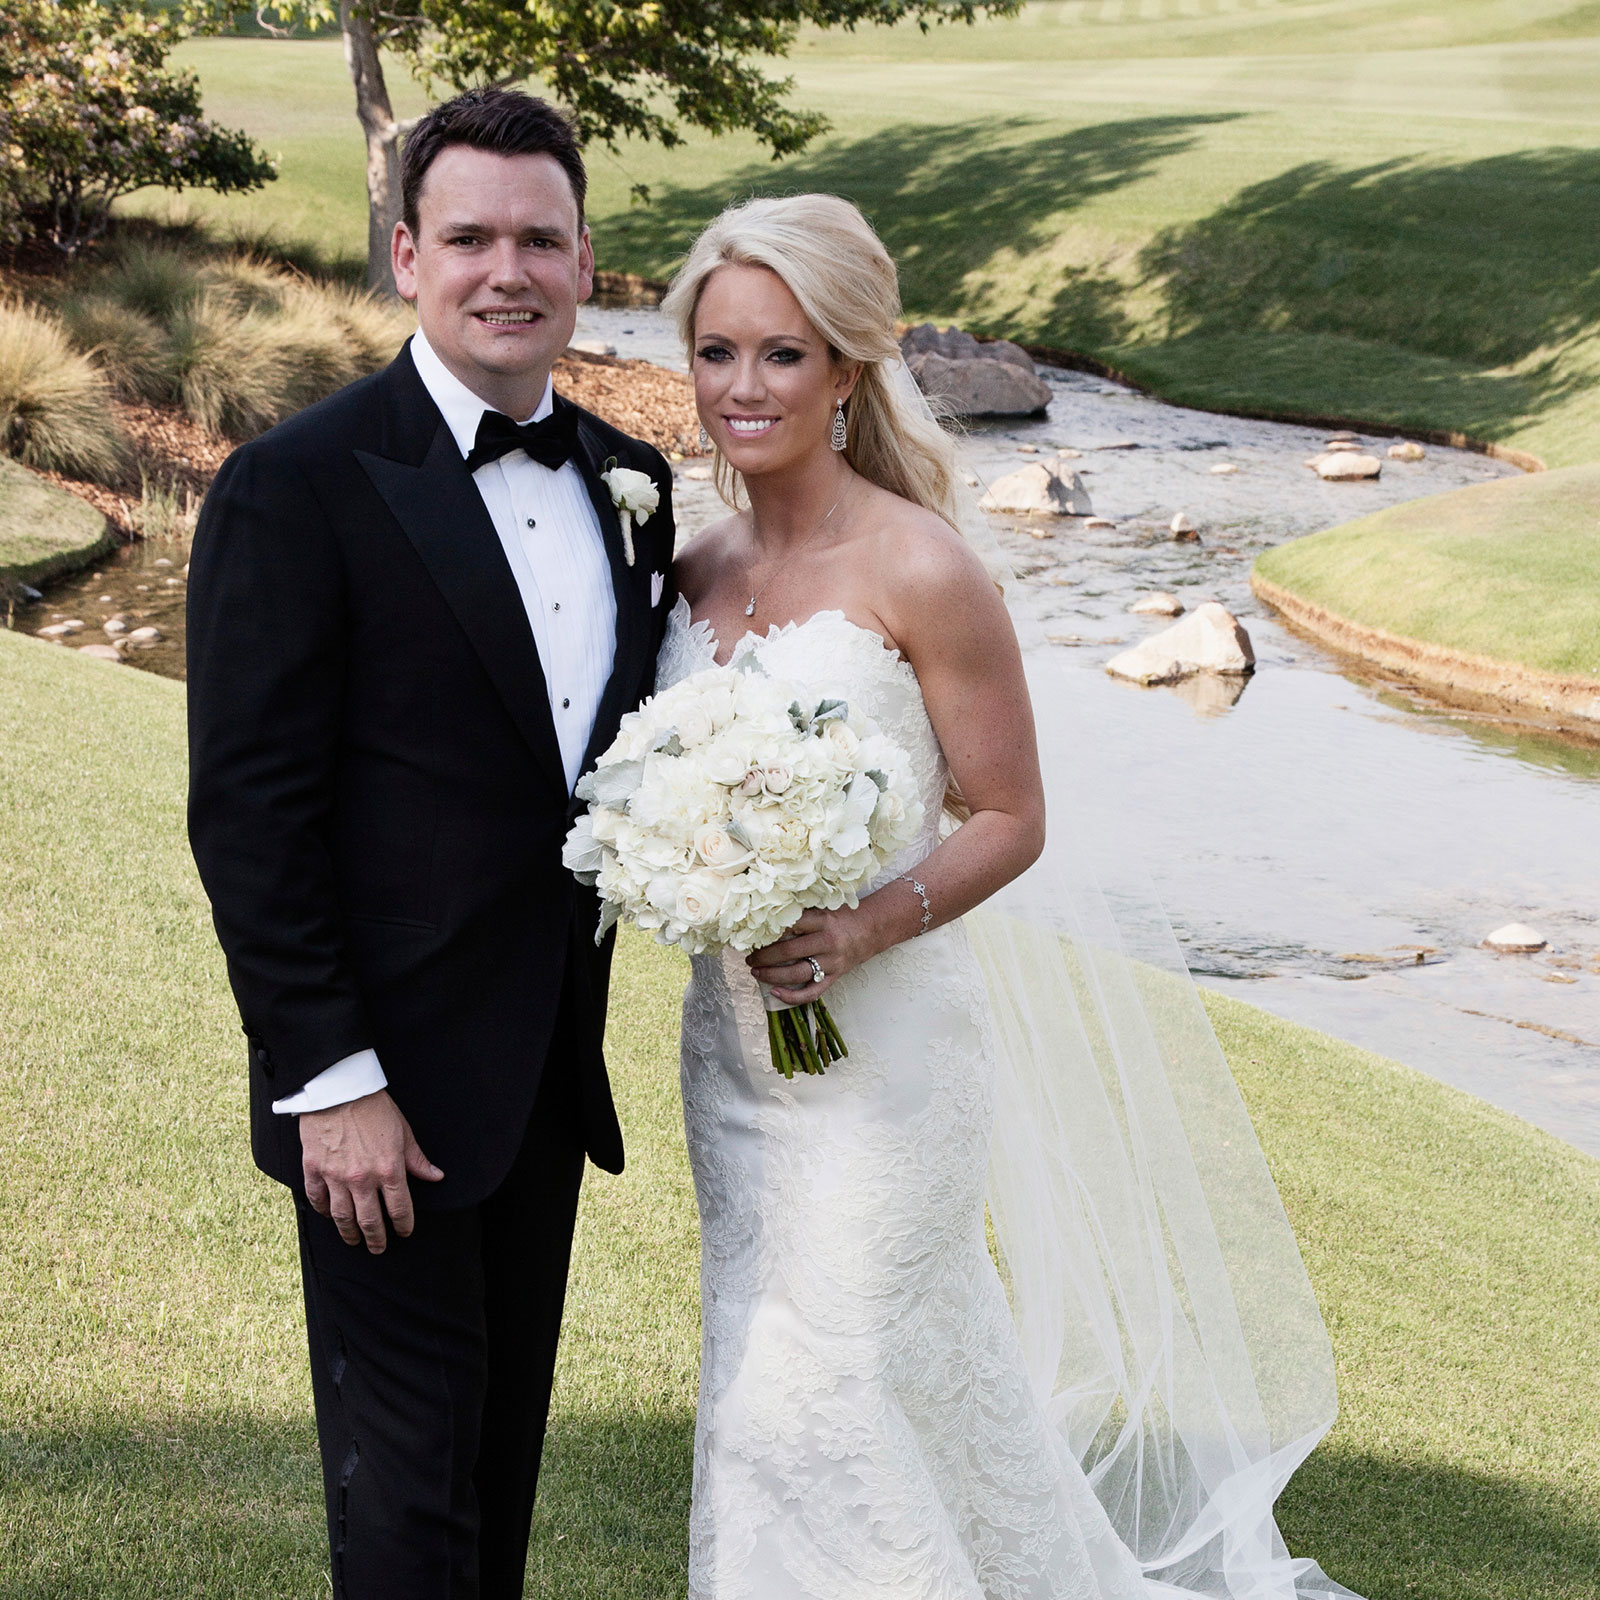 Ashley and Jason – Wedding at the Wynn